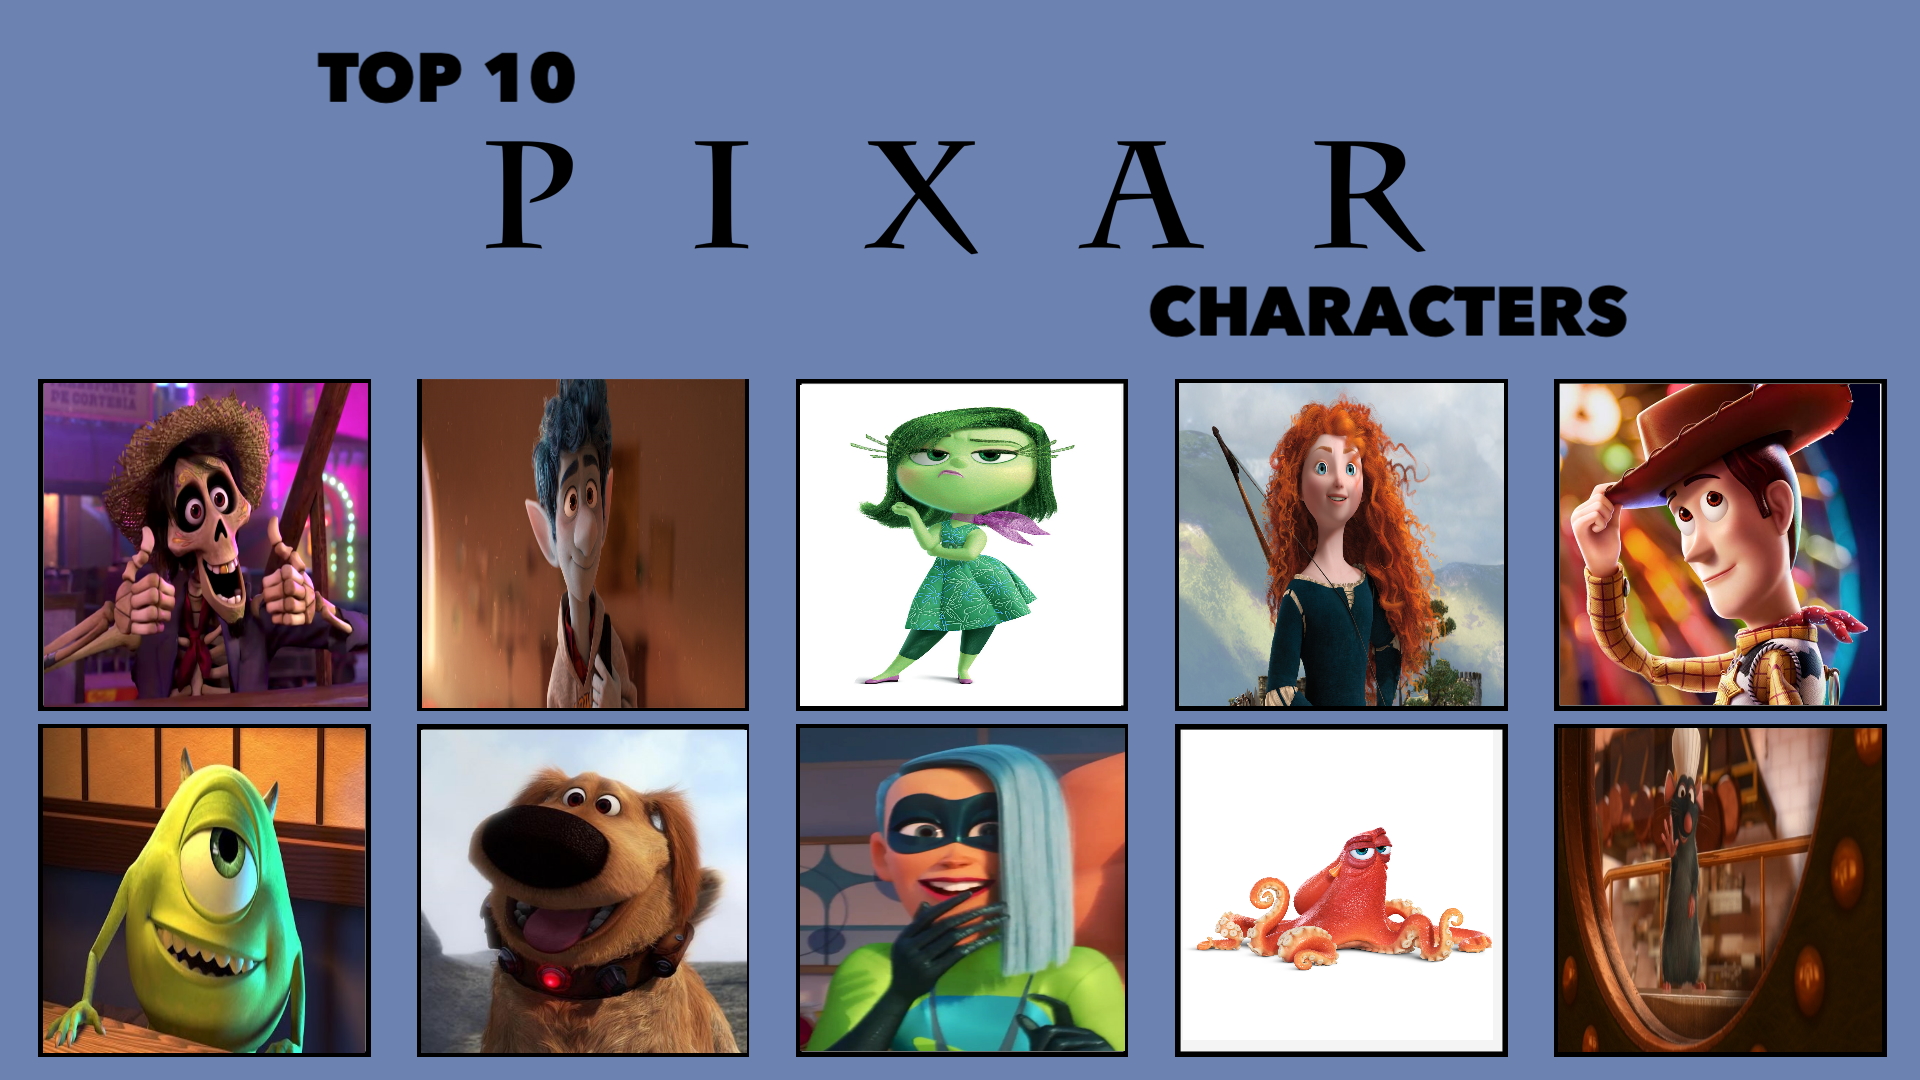 My Top 10 Pixar Characters Meme by Carriejokerbates on DeviantArt